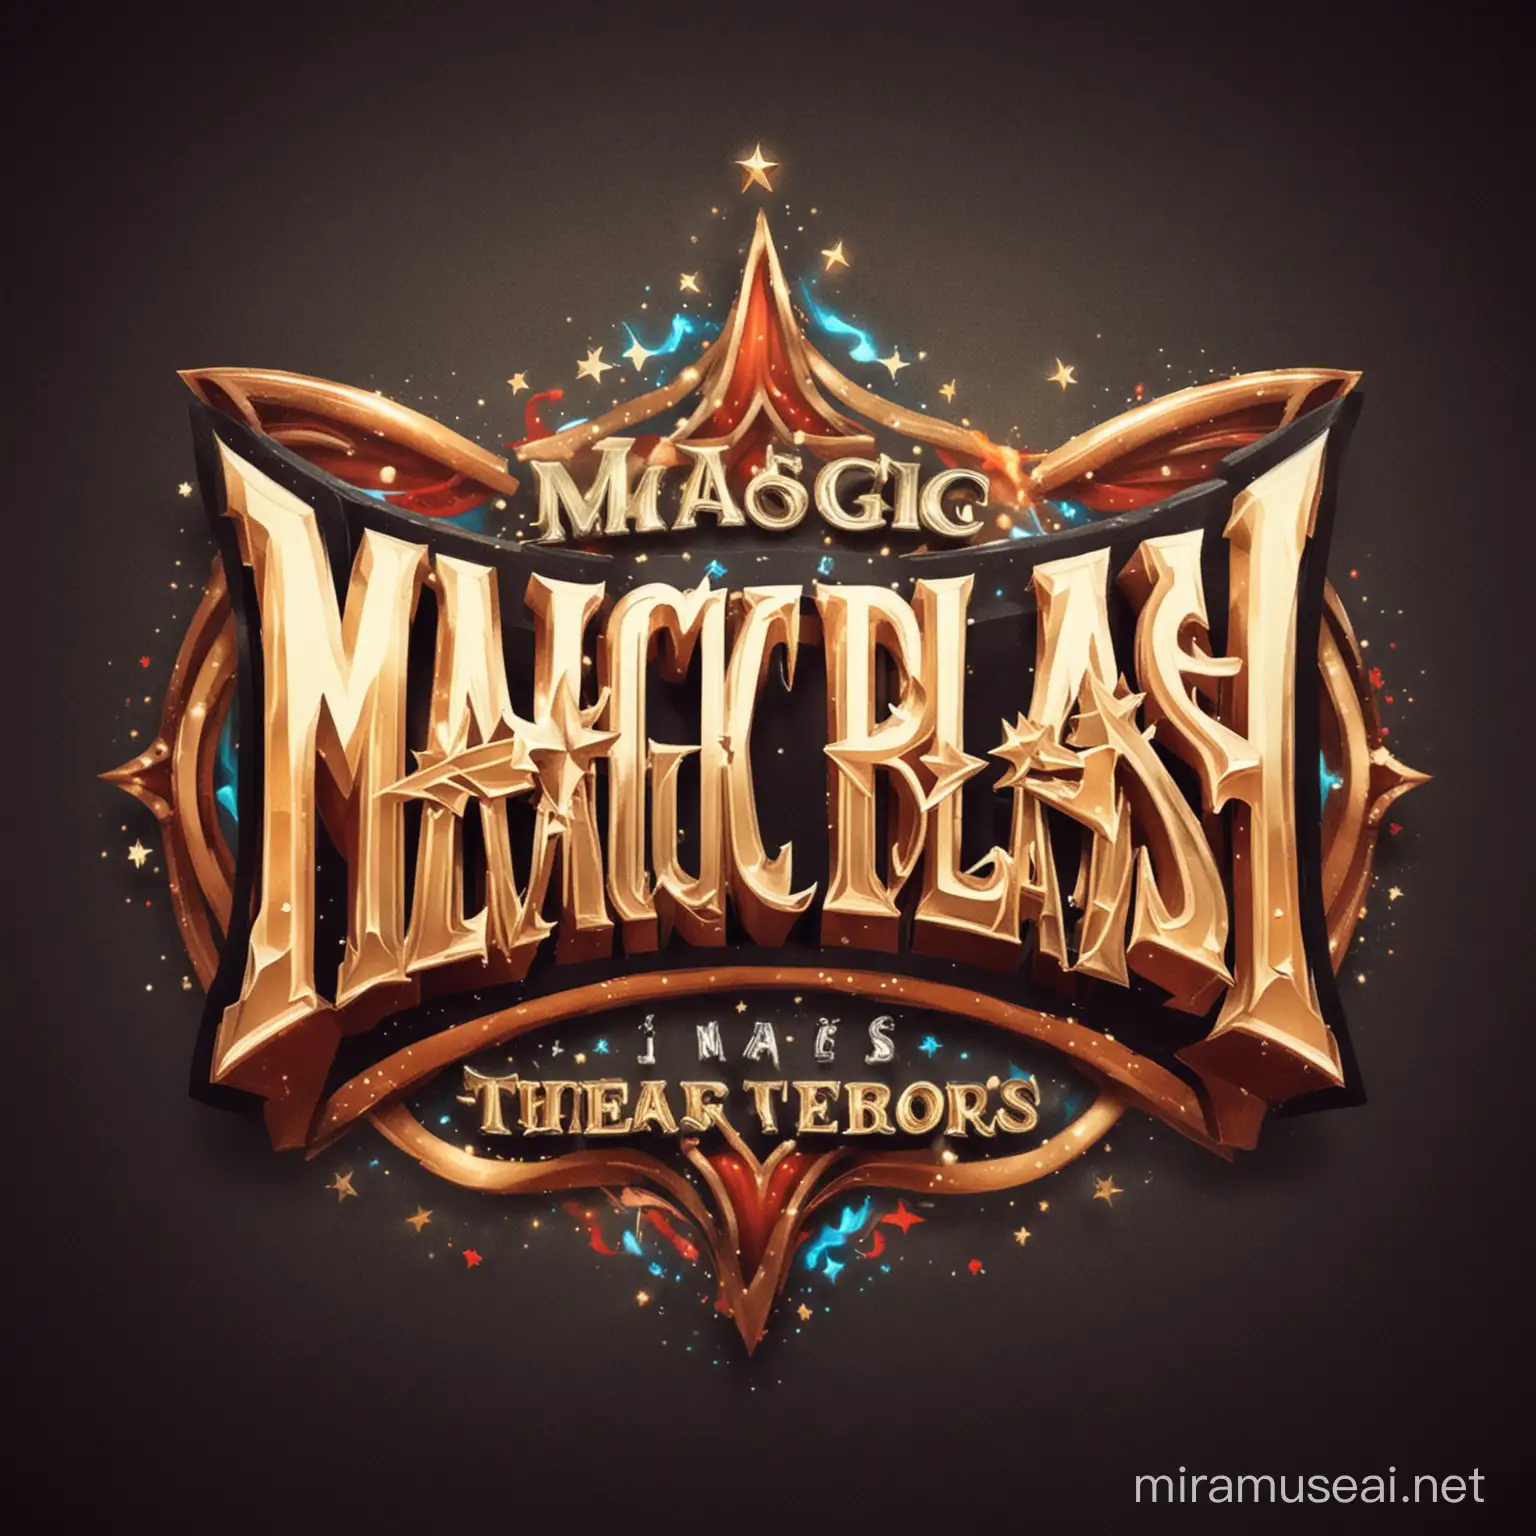  magic blash private theaters logo
